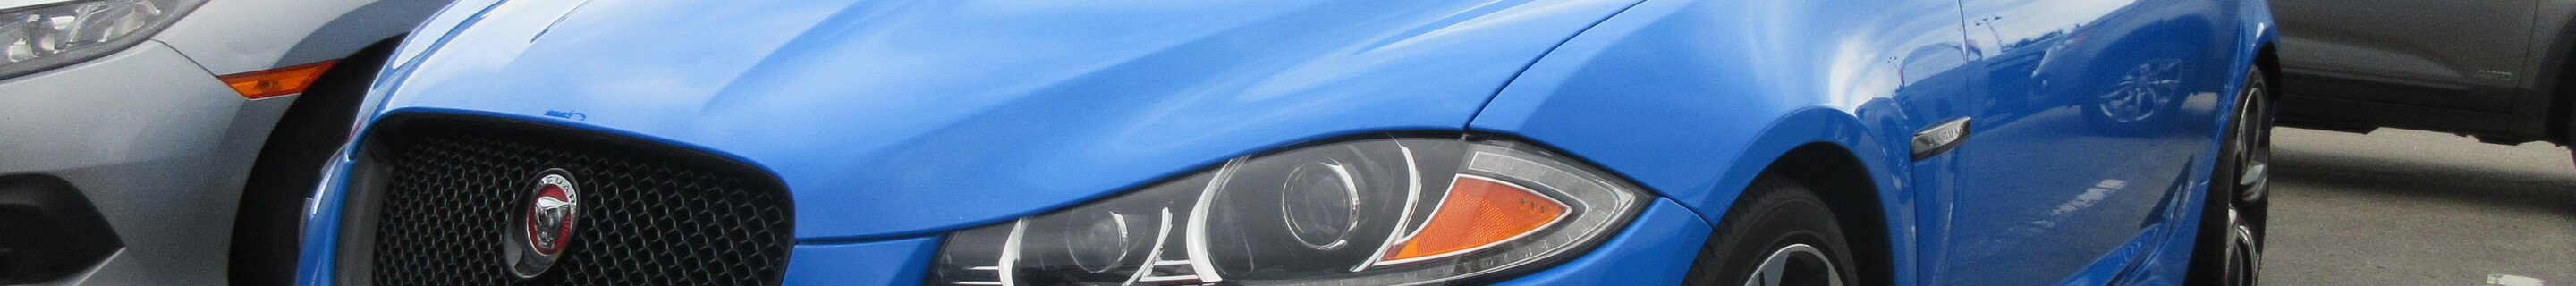 Jaguar XFR-S